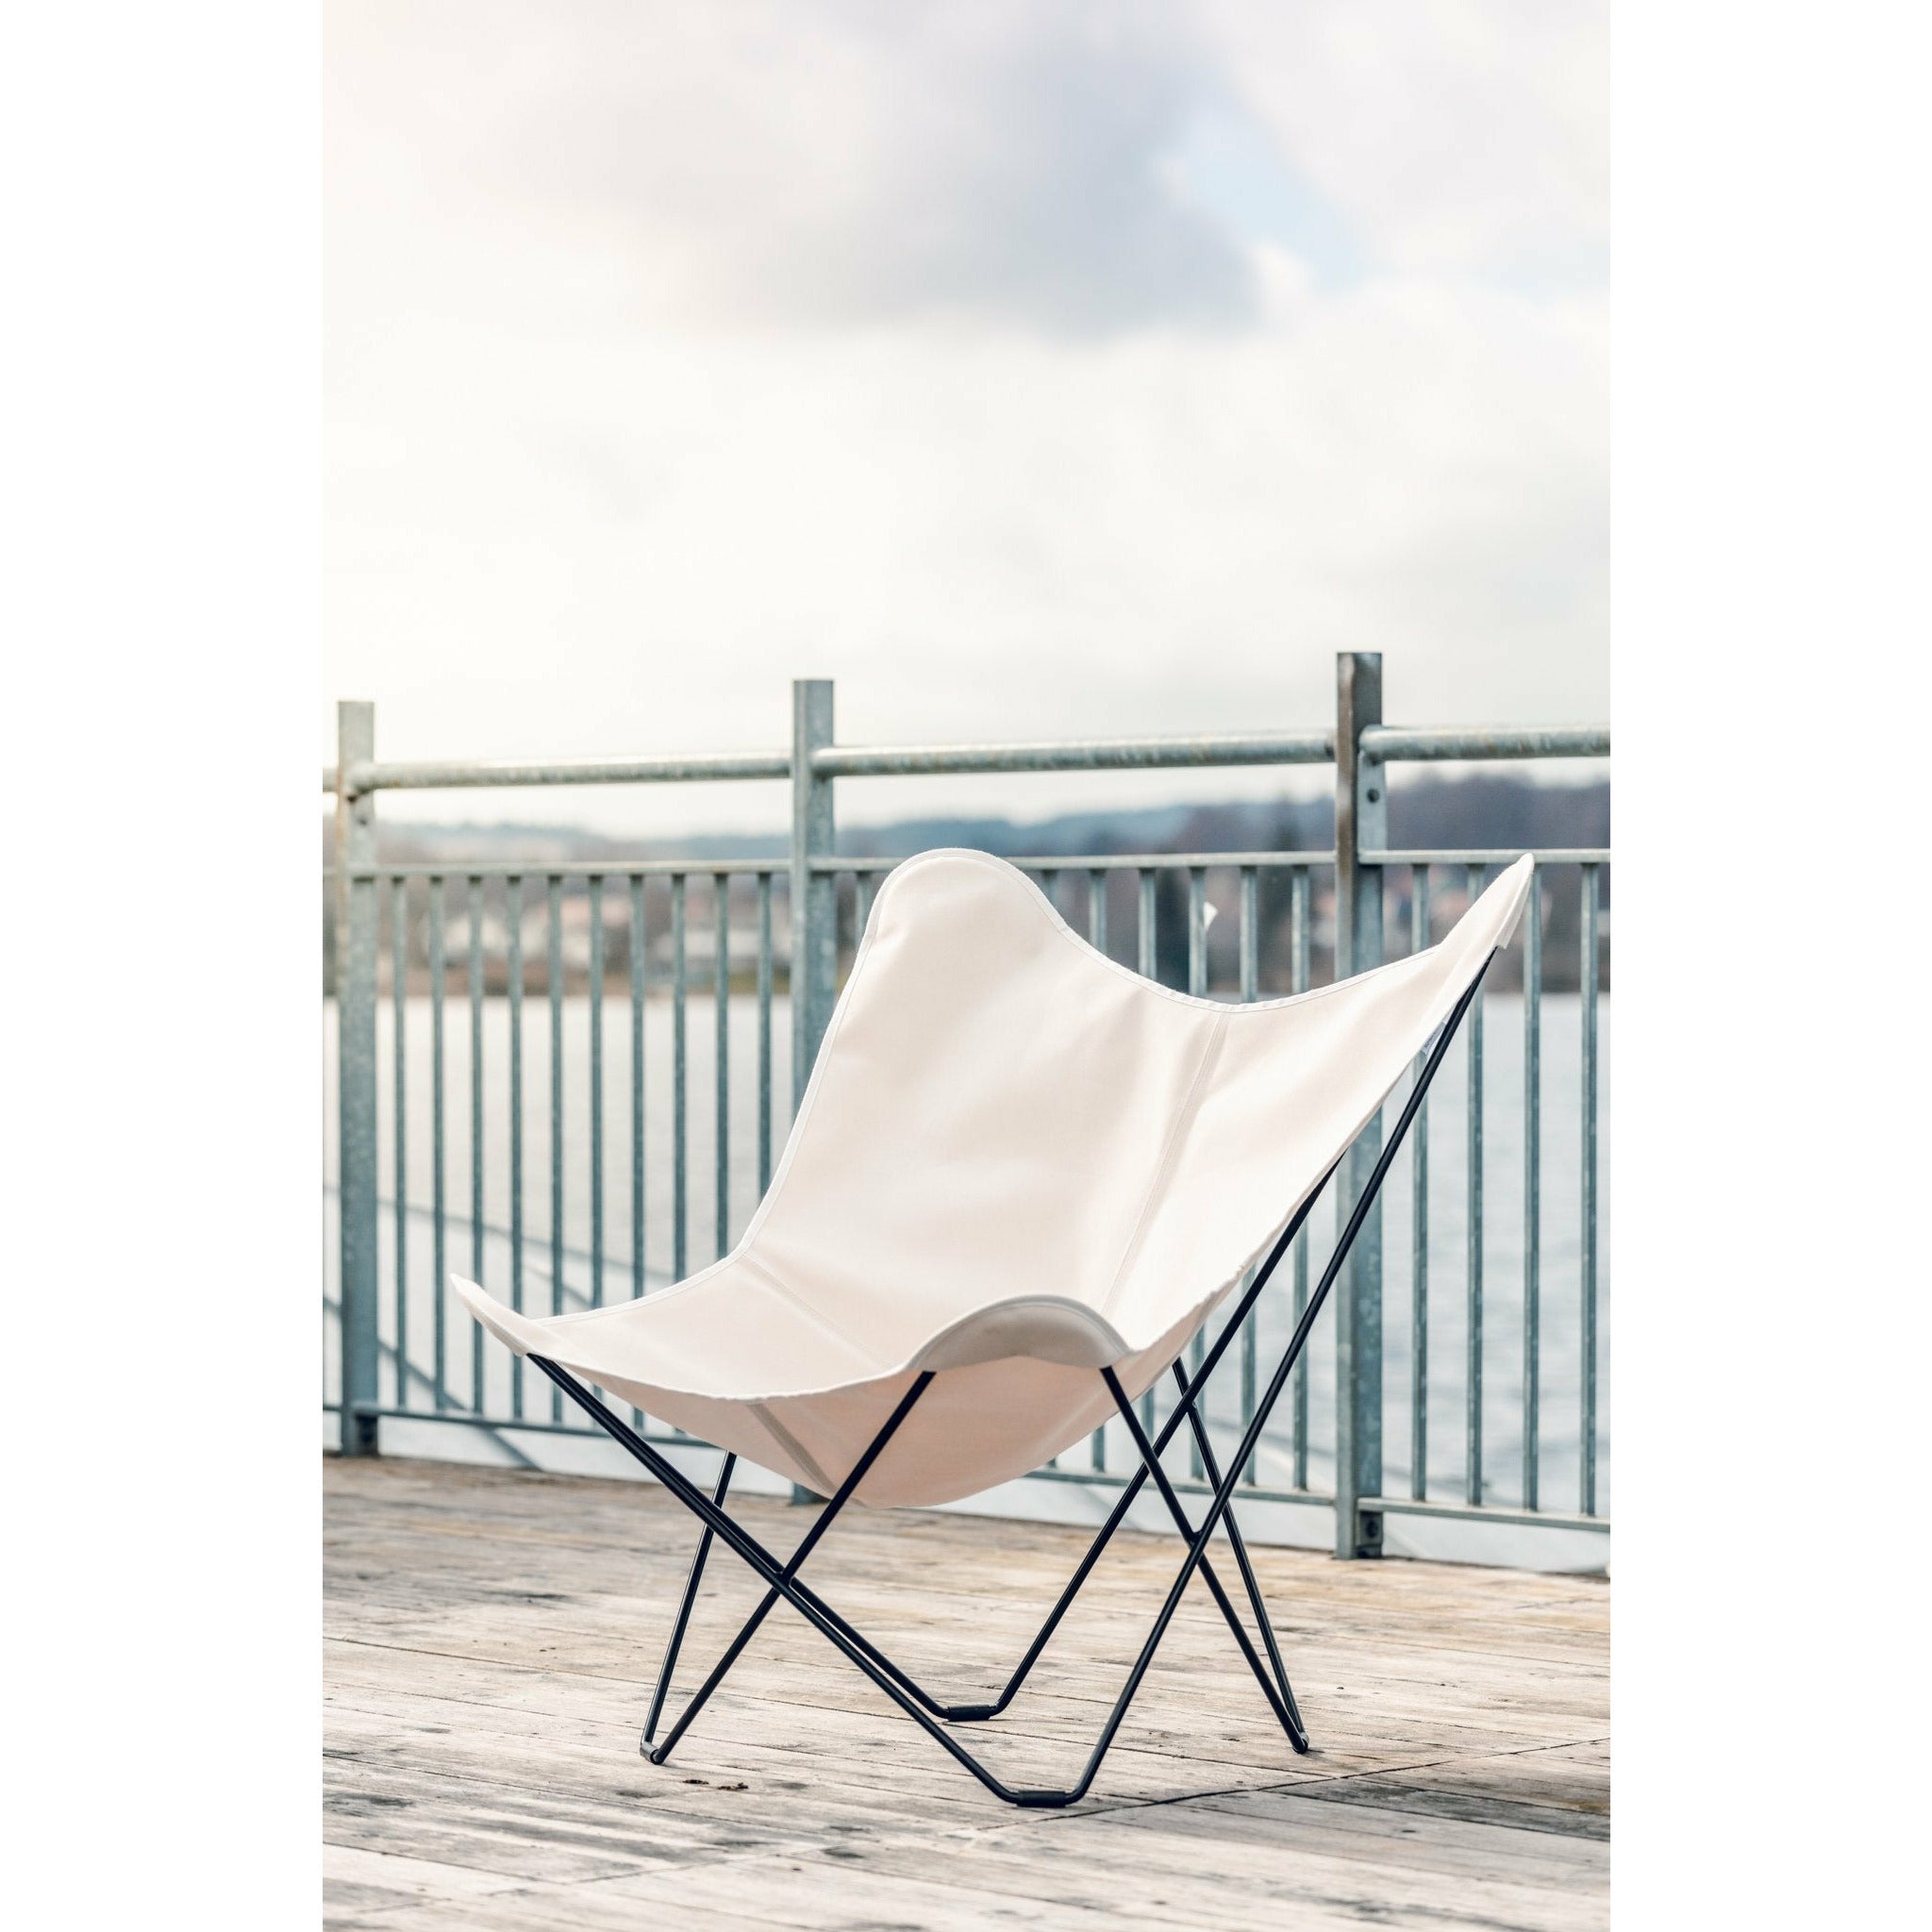 Cuero Sunshine Mariposa Butterfly stoel, oester/grijs buitenframe